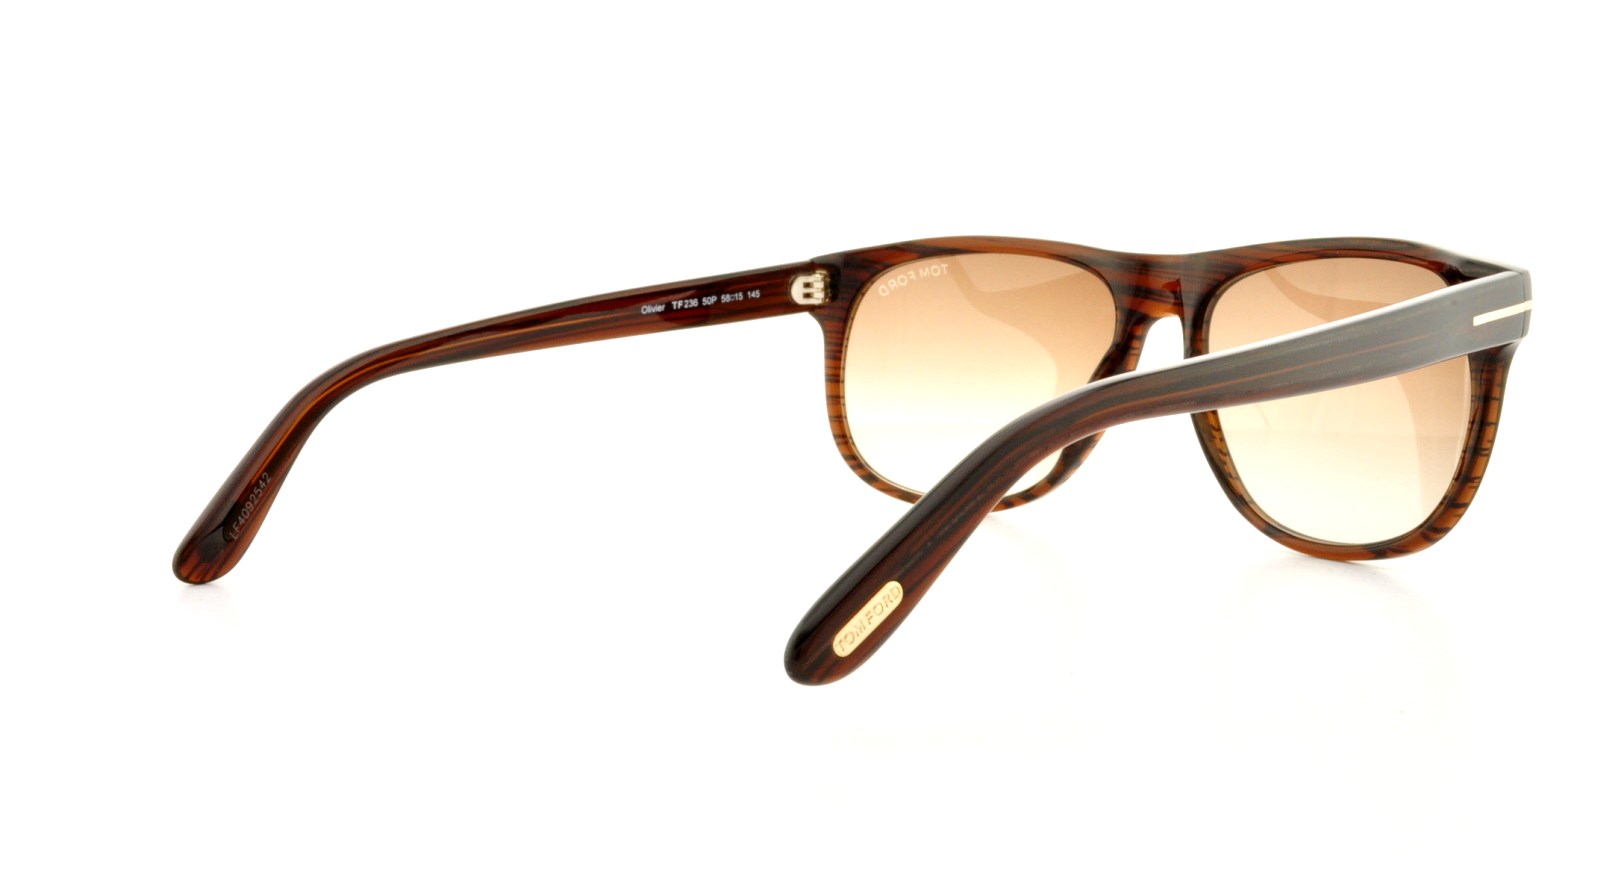 Designer Frames Outlet. Tom Ford Sunglasses FT0236 Olivier